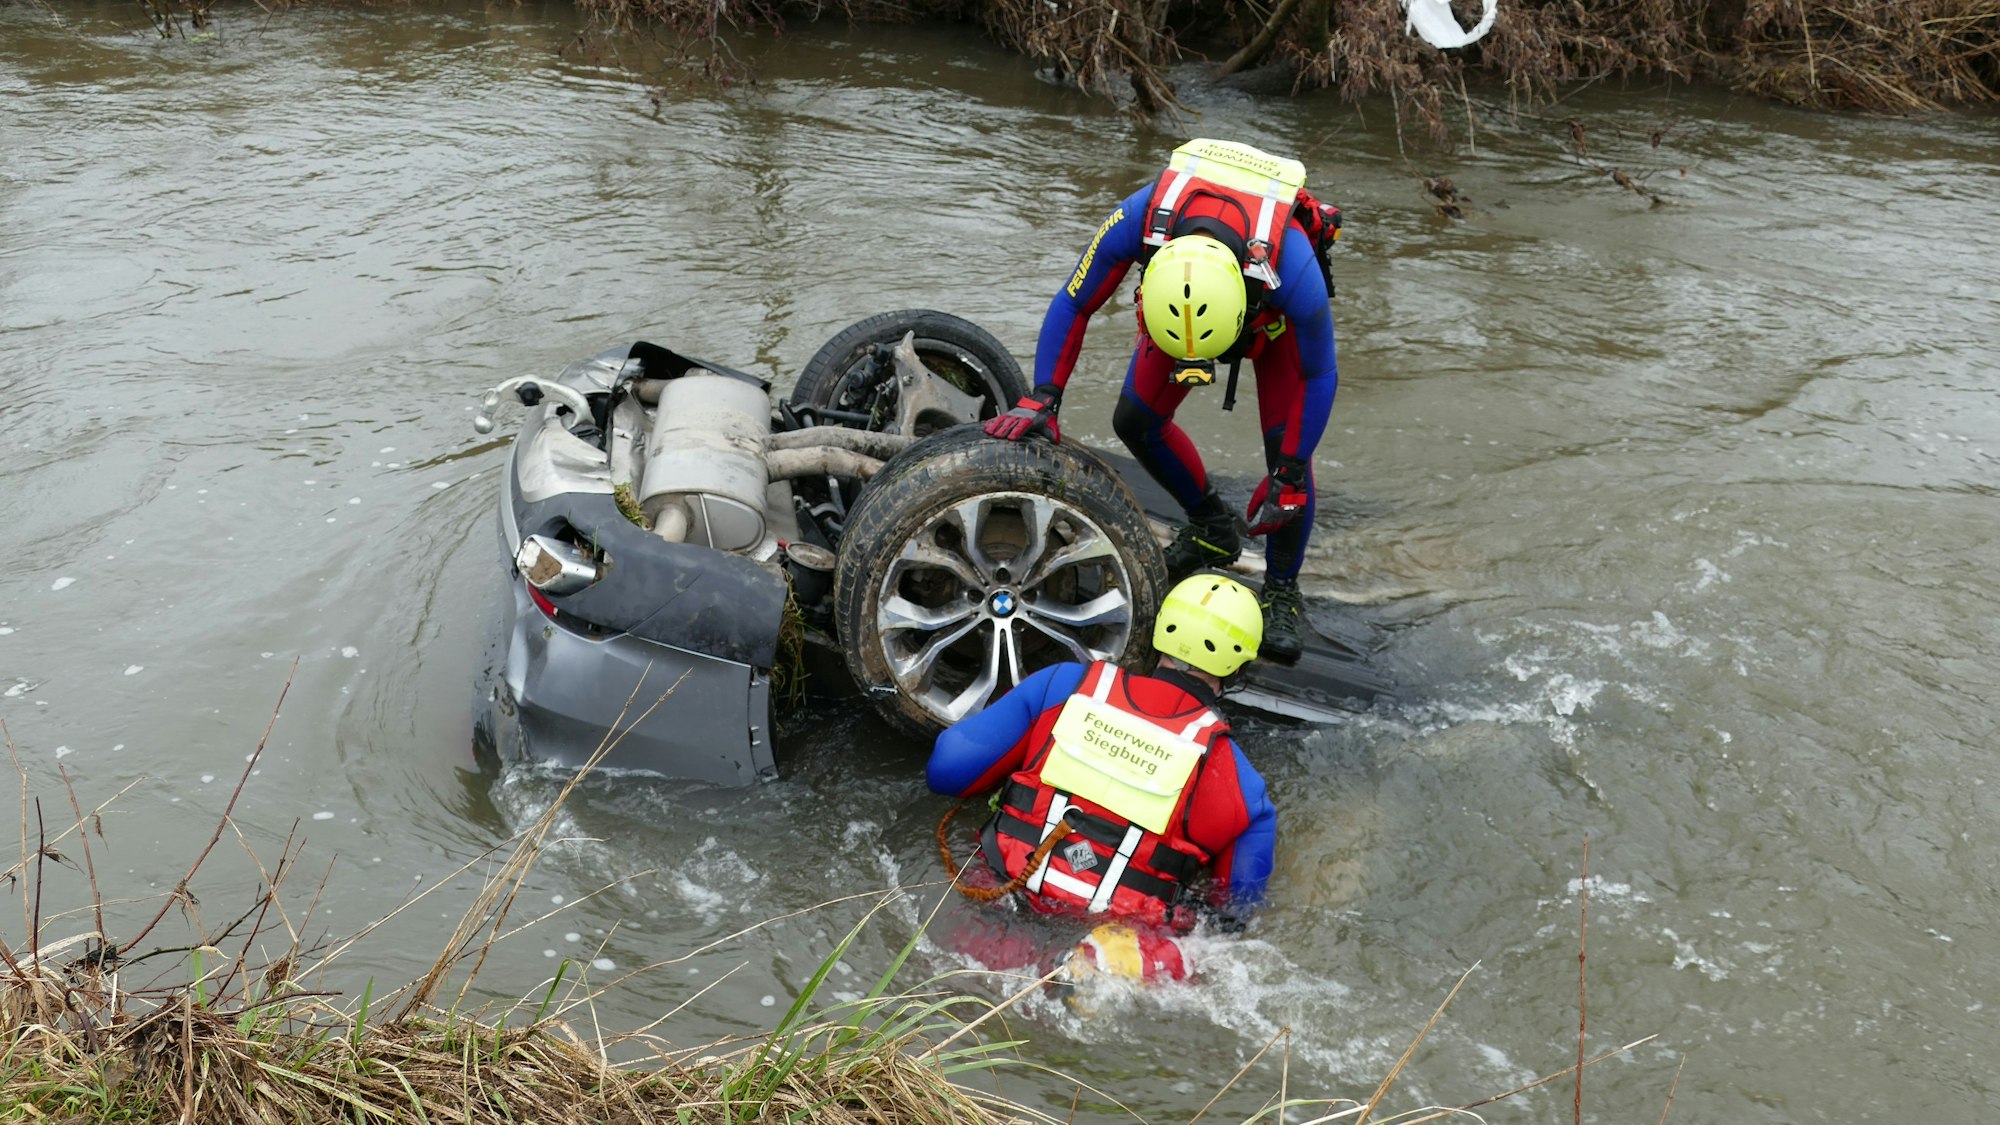 Rettungstaucher stehen an einem Fluss. Ein Auto schwimmt im Wasser.